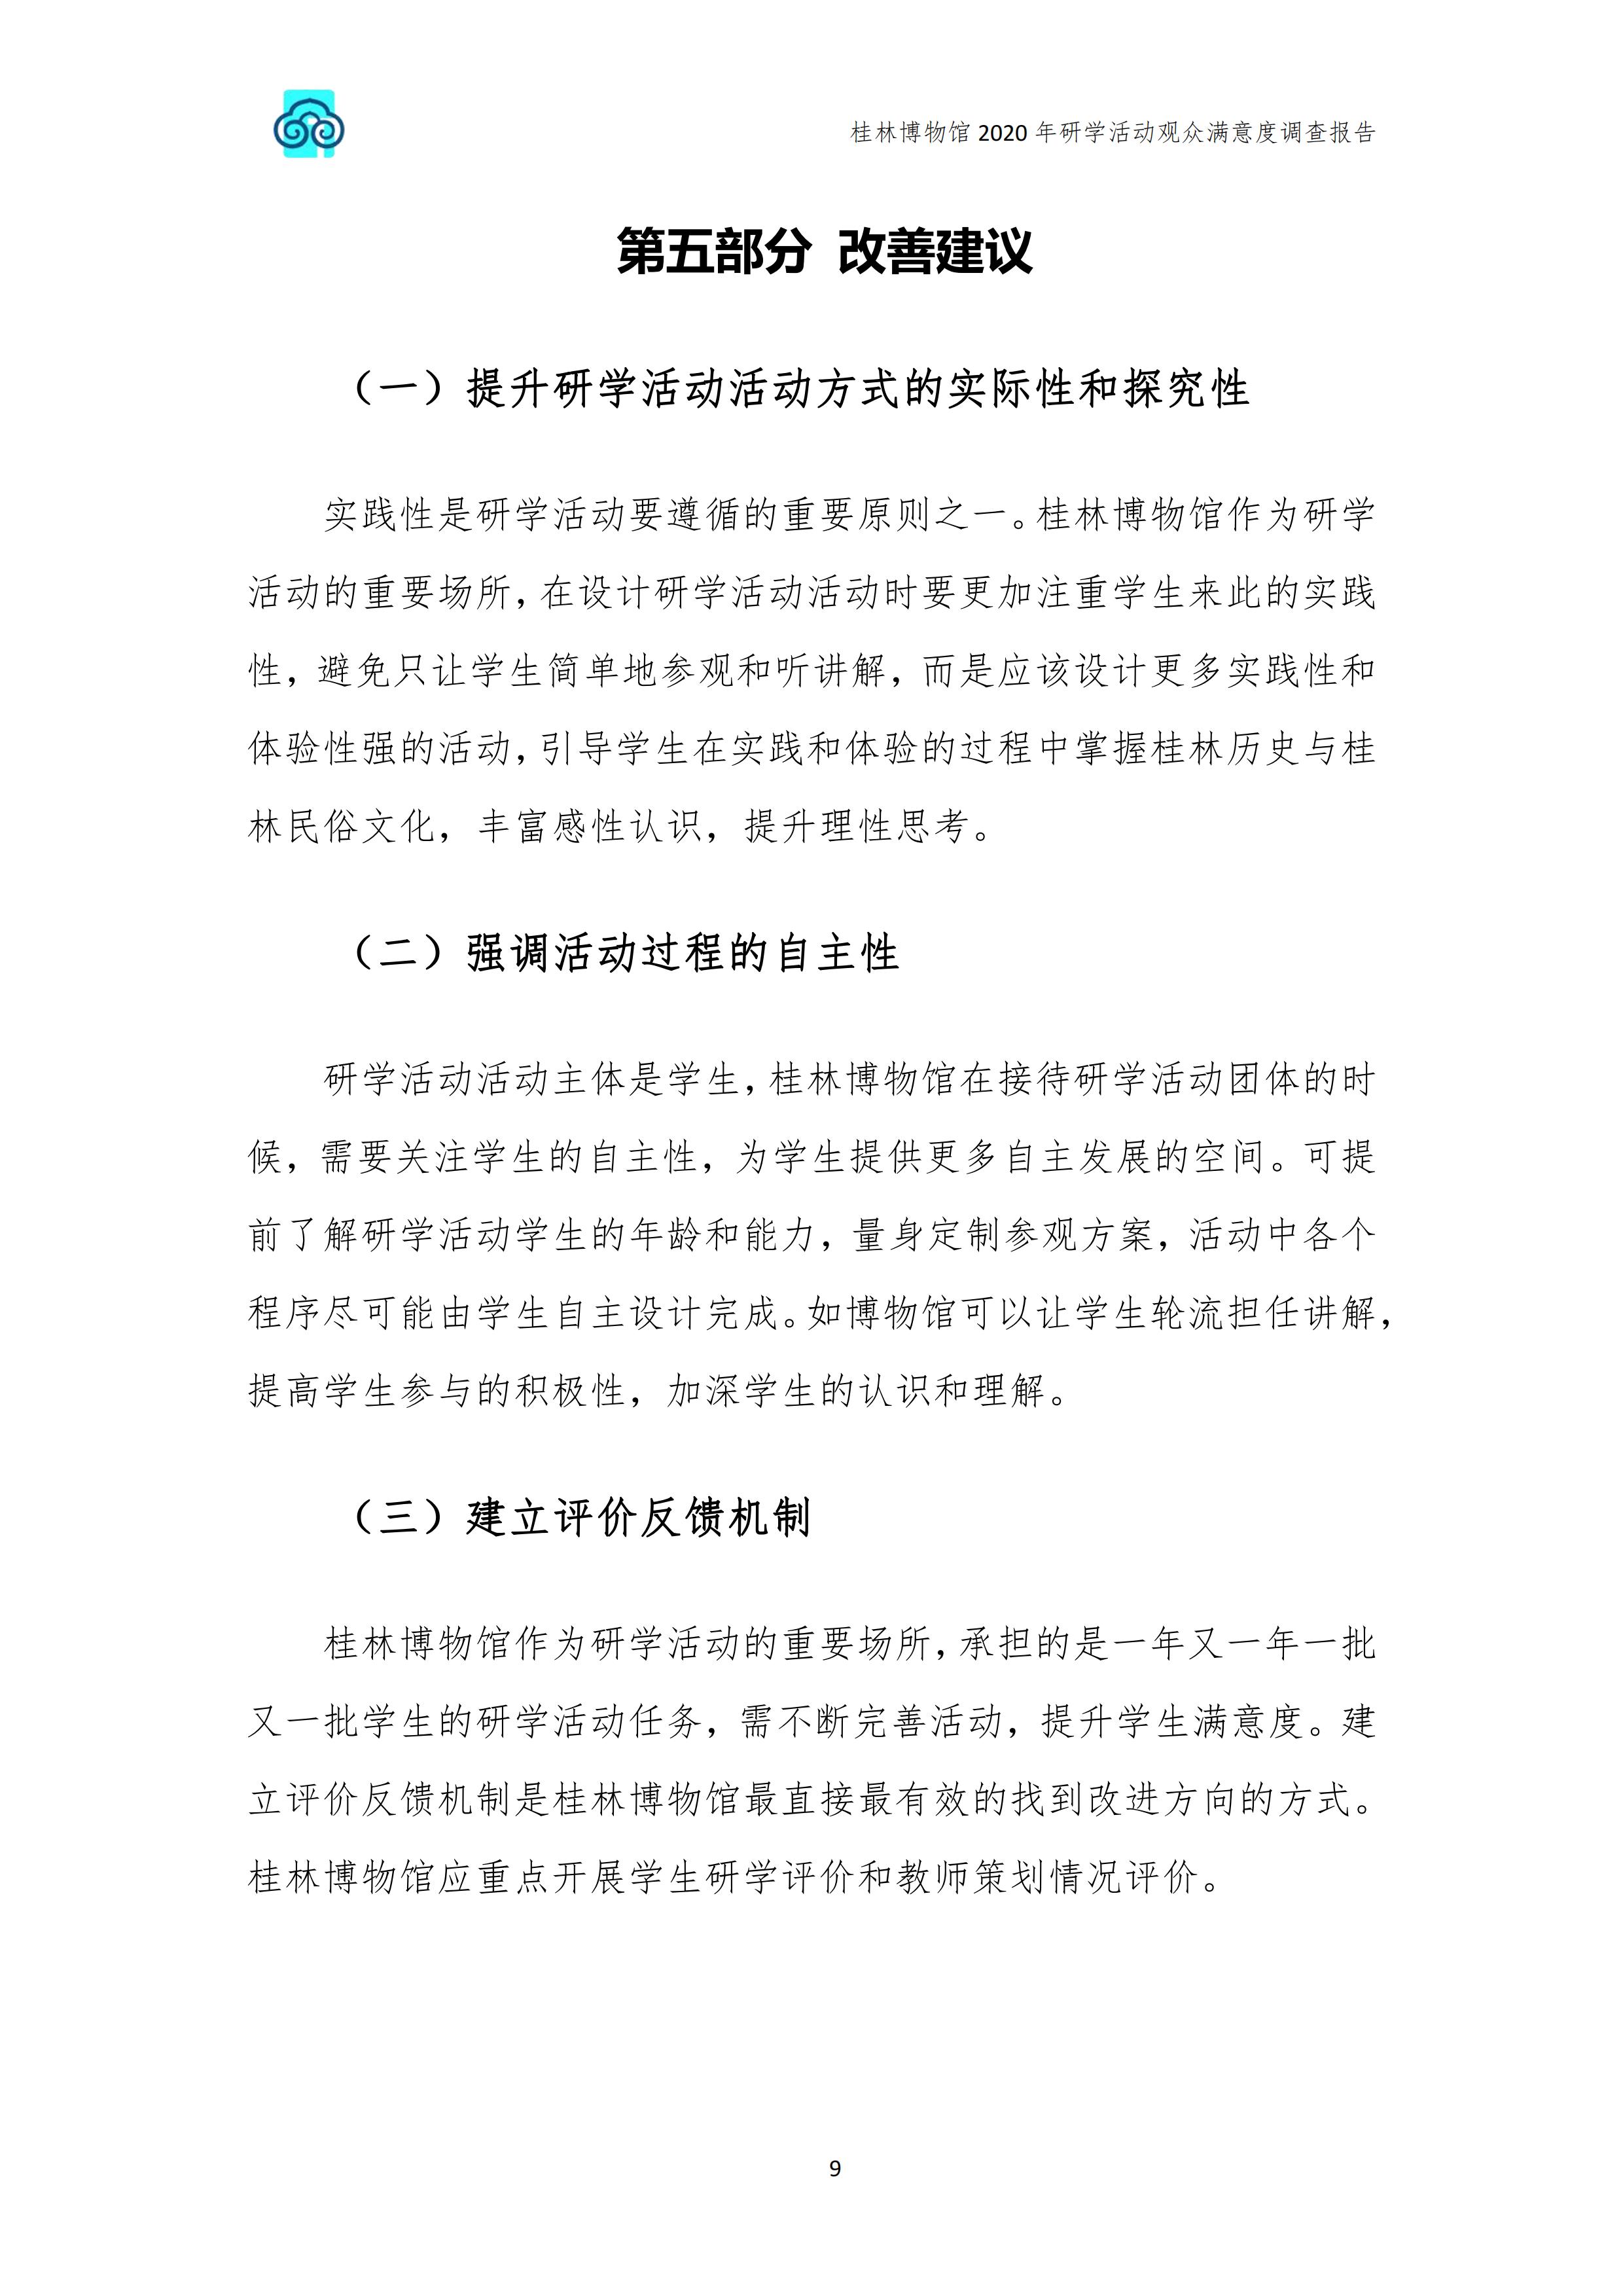 桂林博物馆2020年研学活动观众满意度调查报告_v3_10.jpg